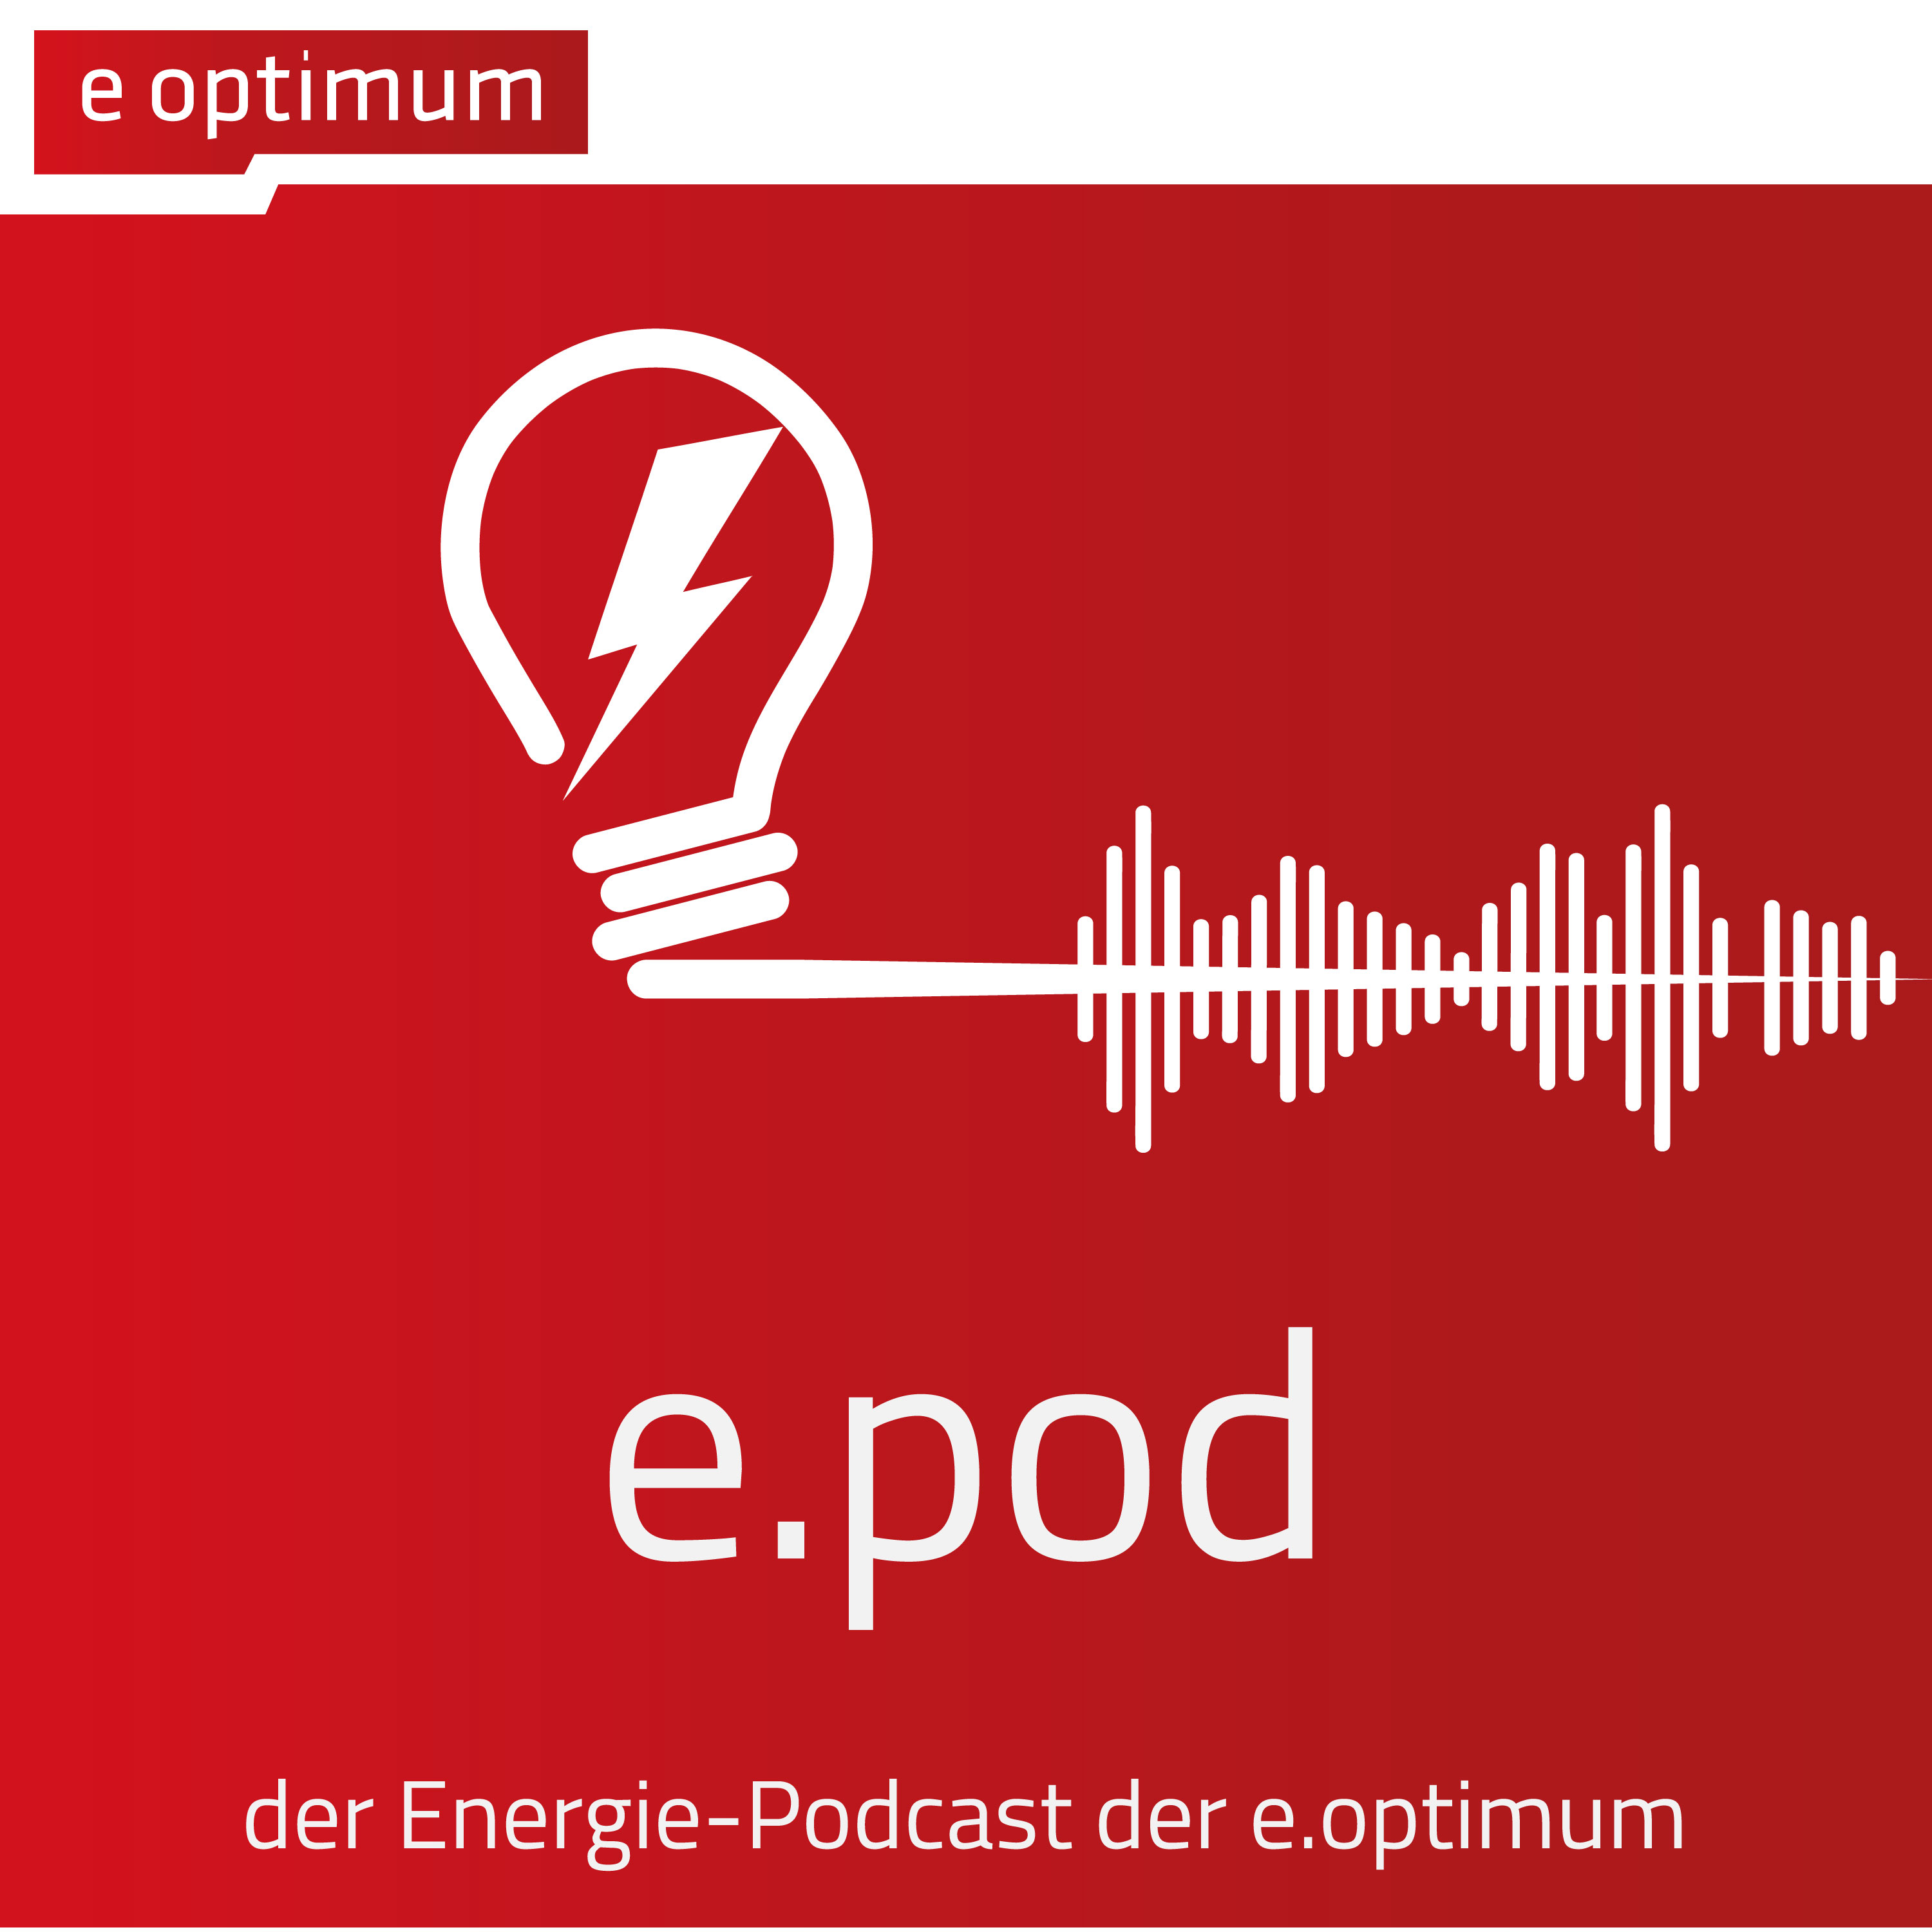 e.pod – der Energie-Podcast der e.optimum